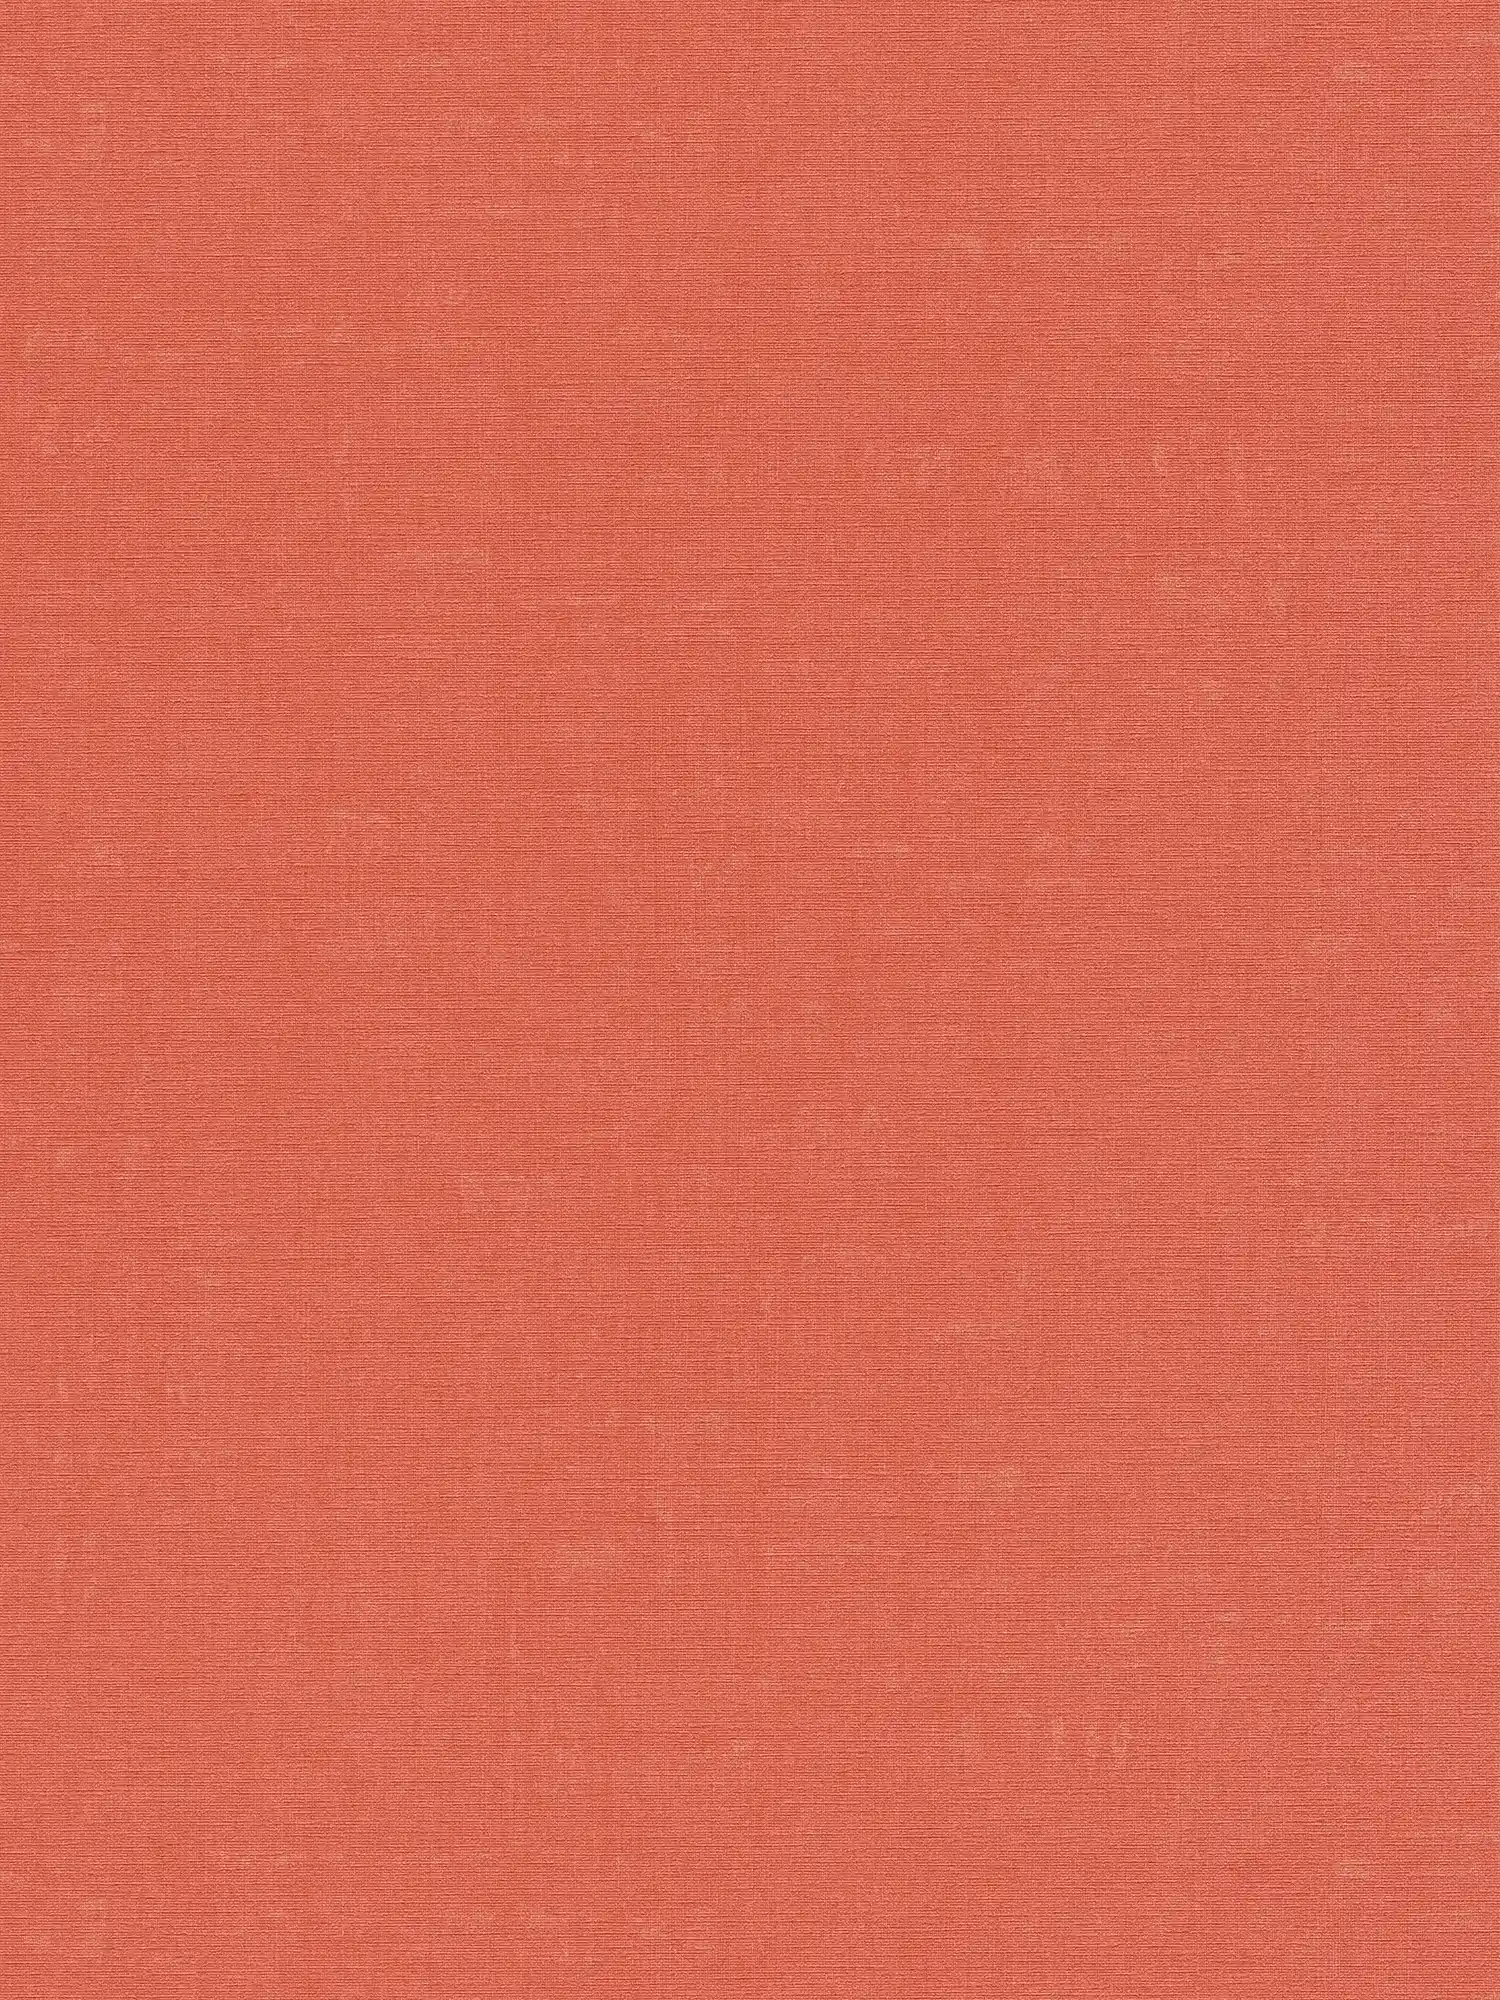 Papier peint uni avec motif chiné - orange, rouge
